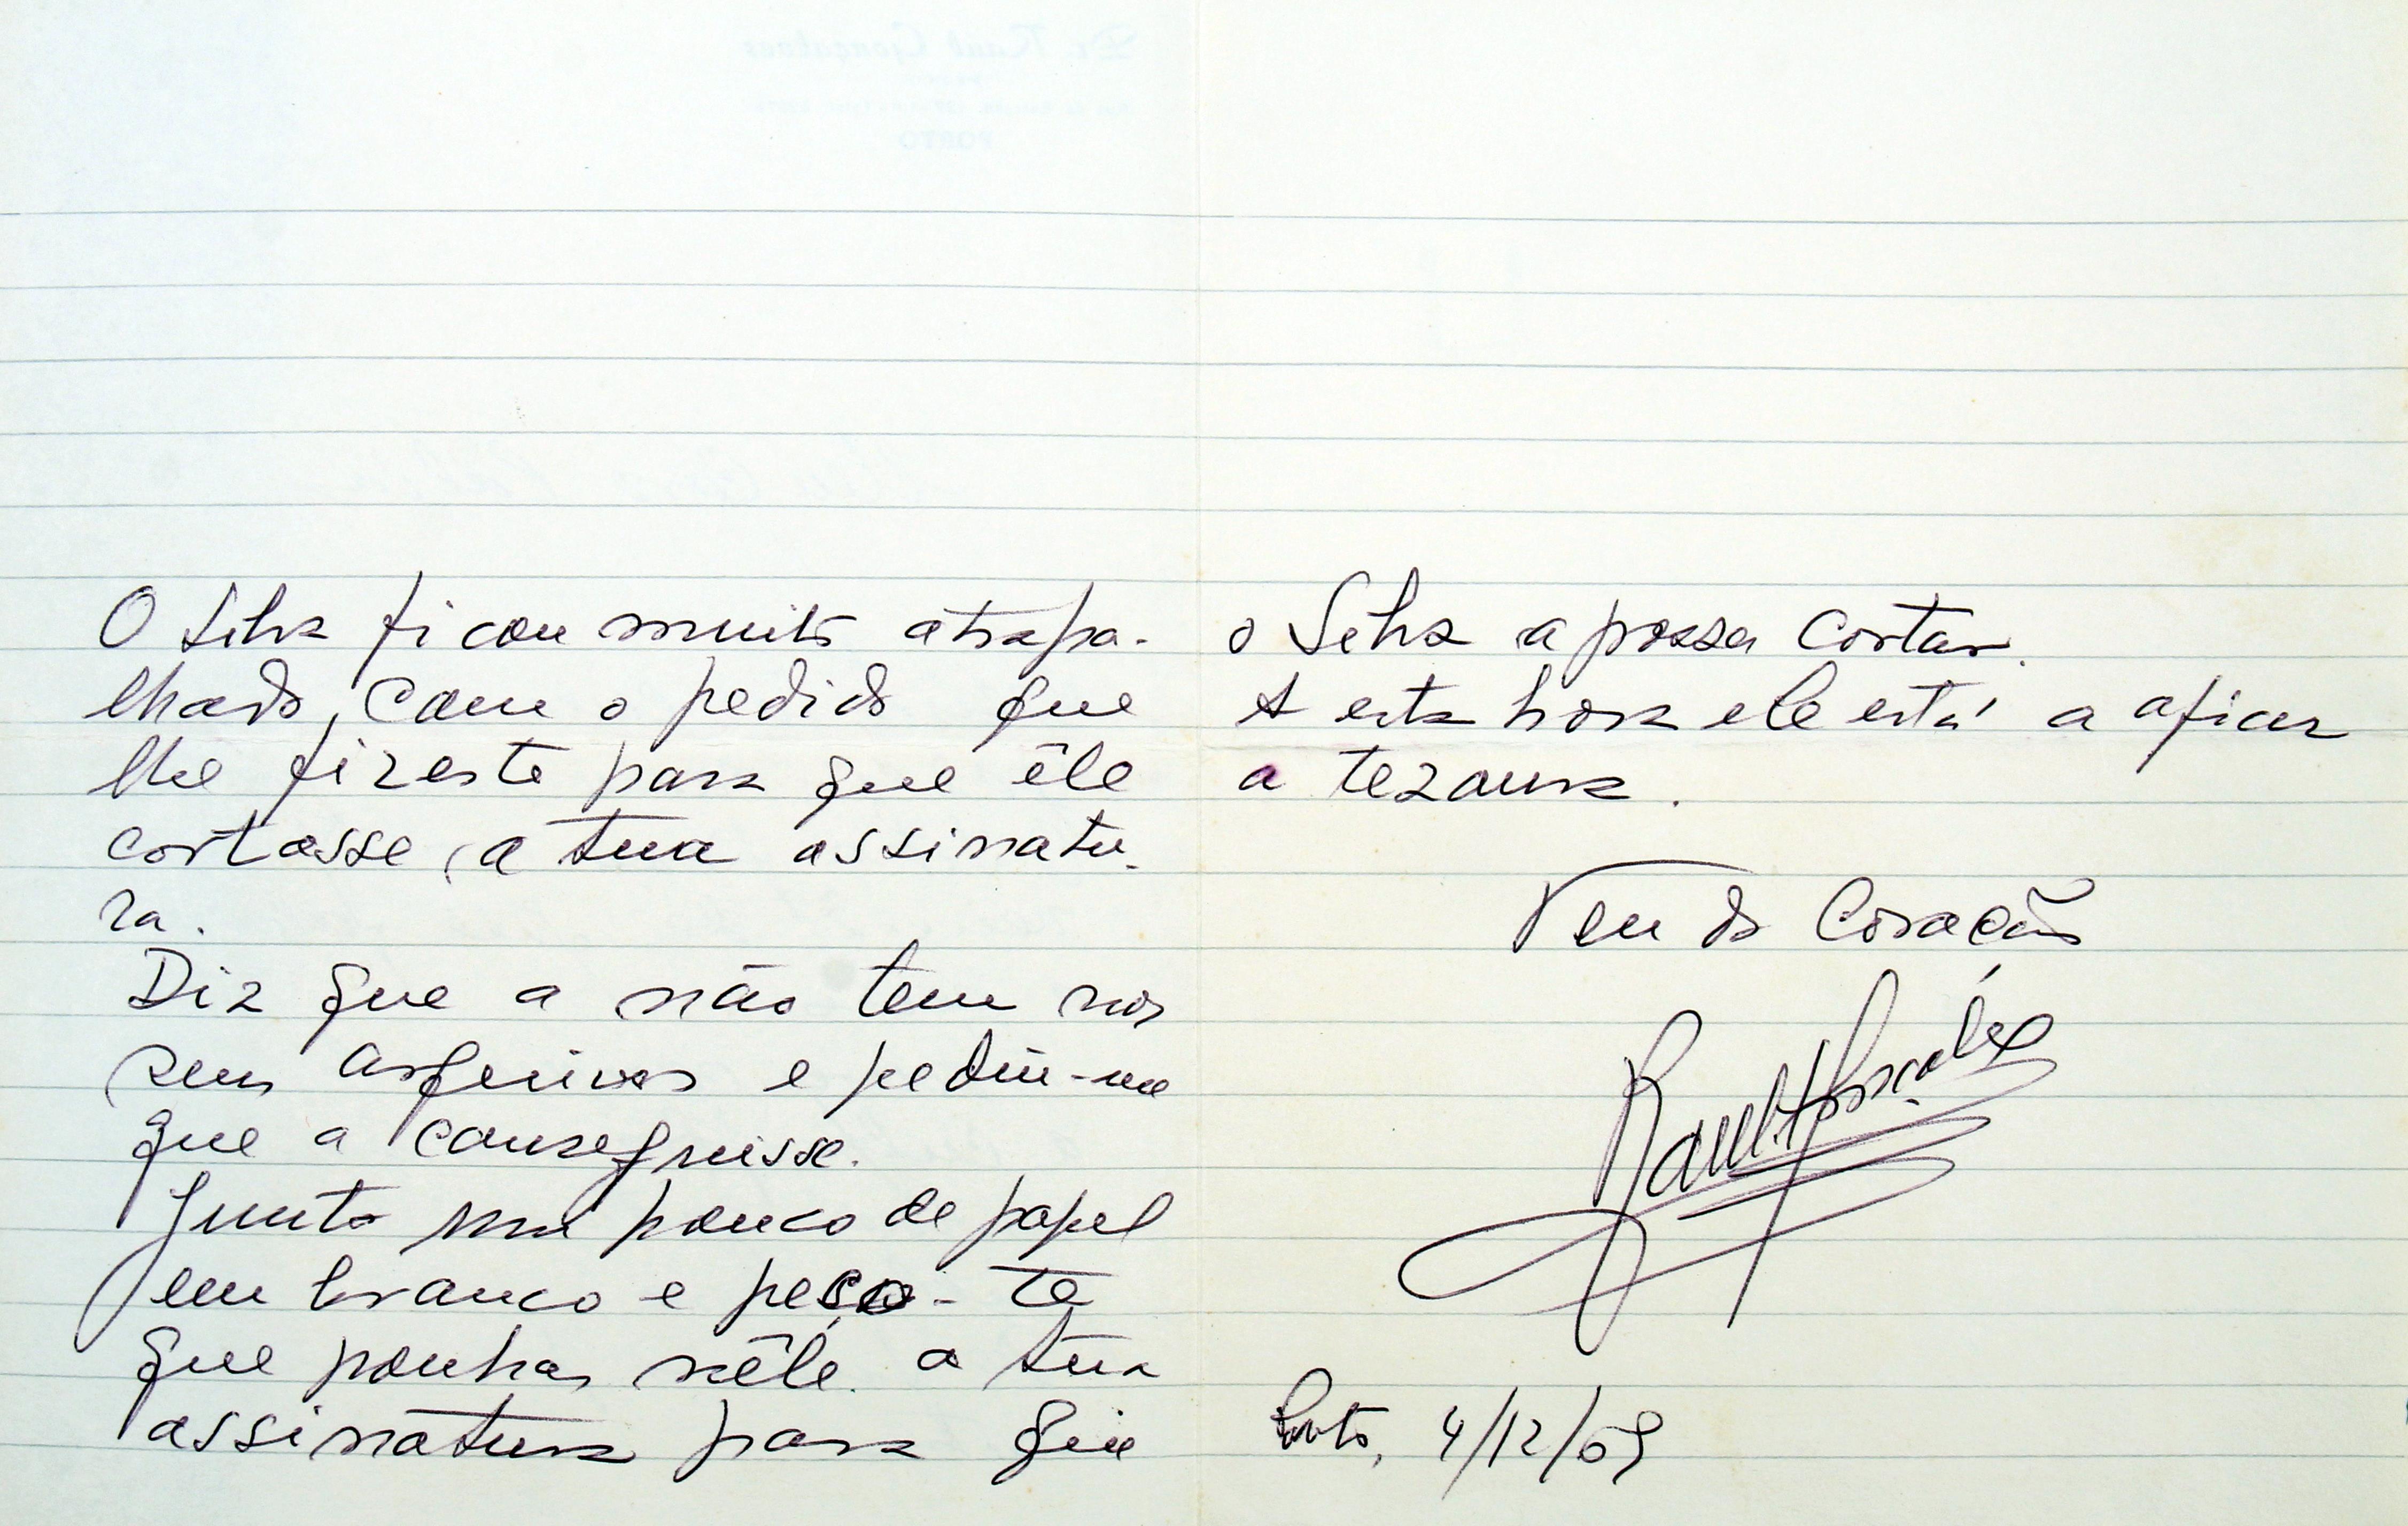 Cruz Caldas (4) : 1966 - 2009 : [carta de Raúl Gonçalves a Cruz Caldas]